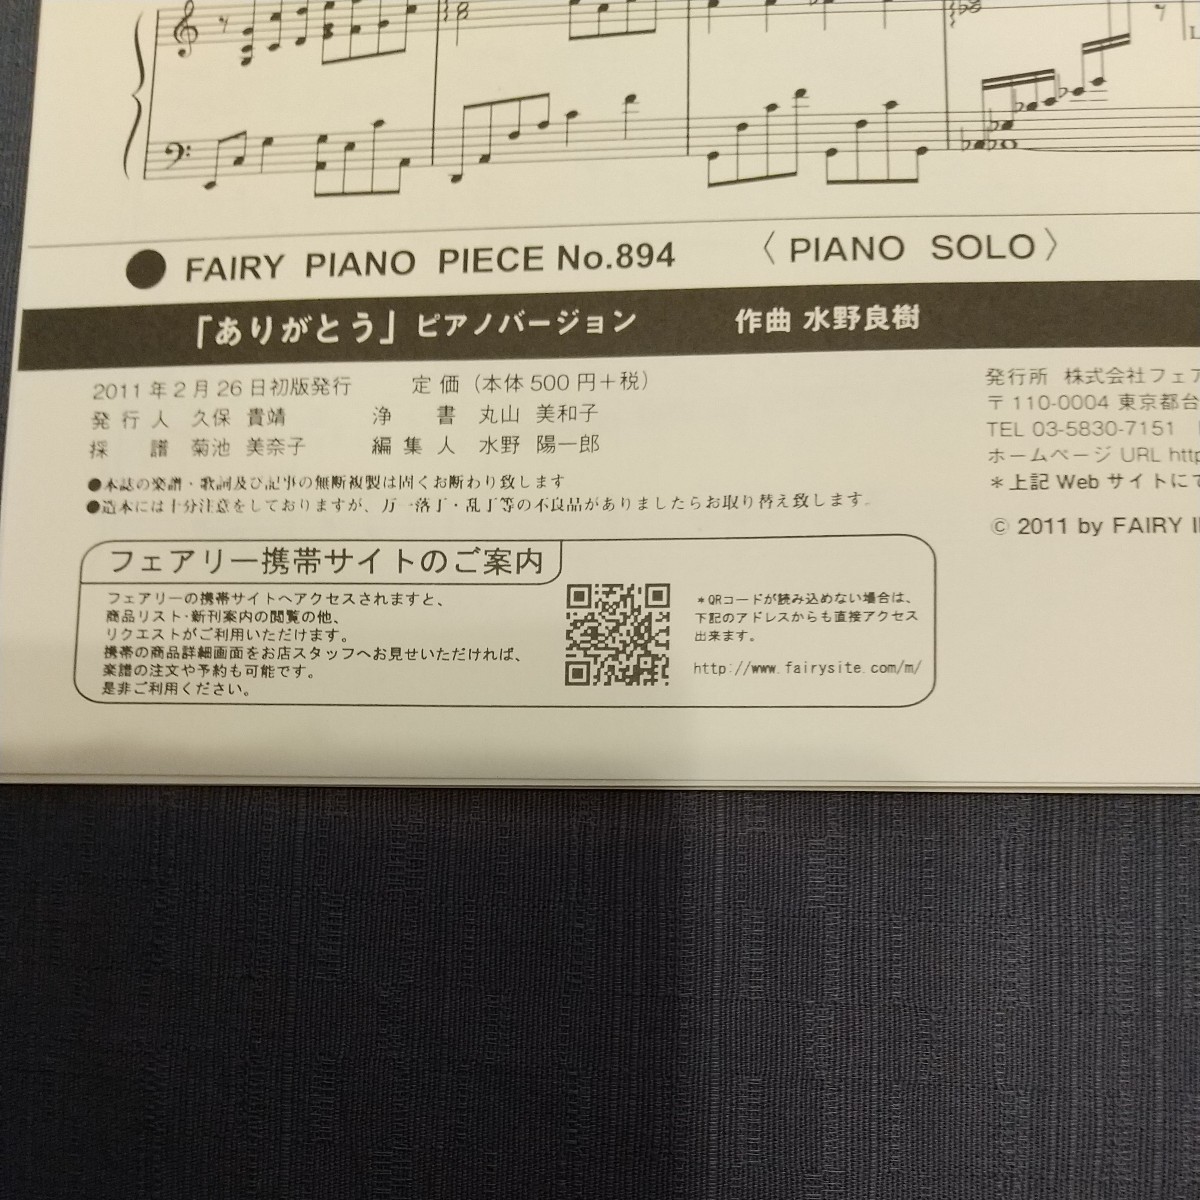 楽譜 「ありがとう」 ピアノバージョン/松下奈緒 (ピアノピース 894/ピアノソロ)